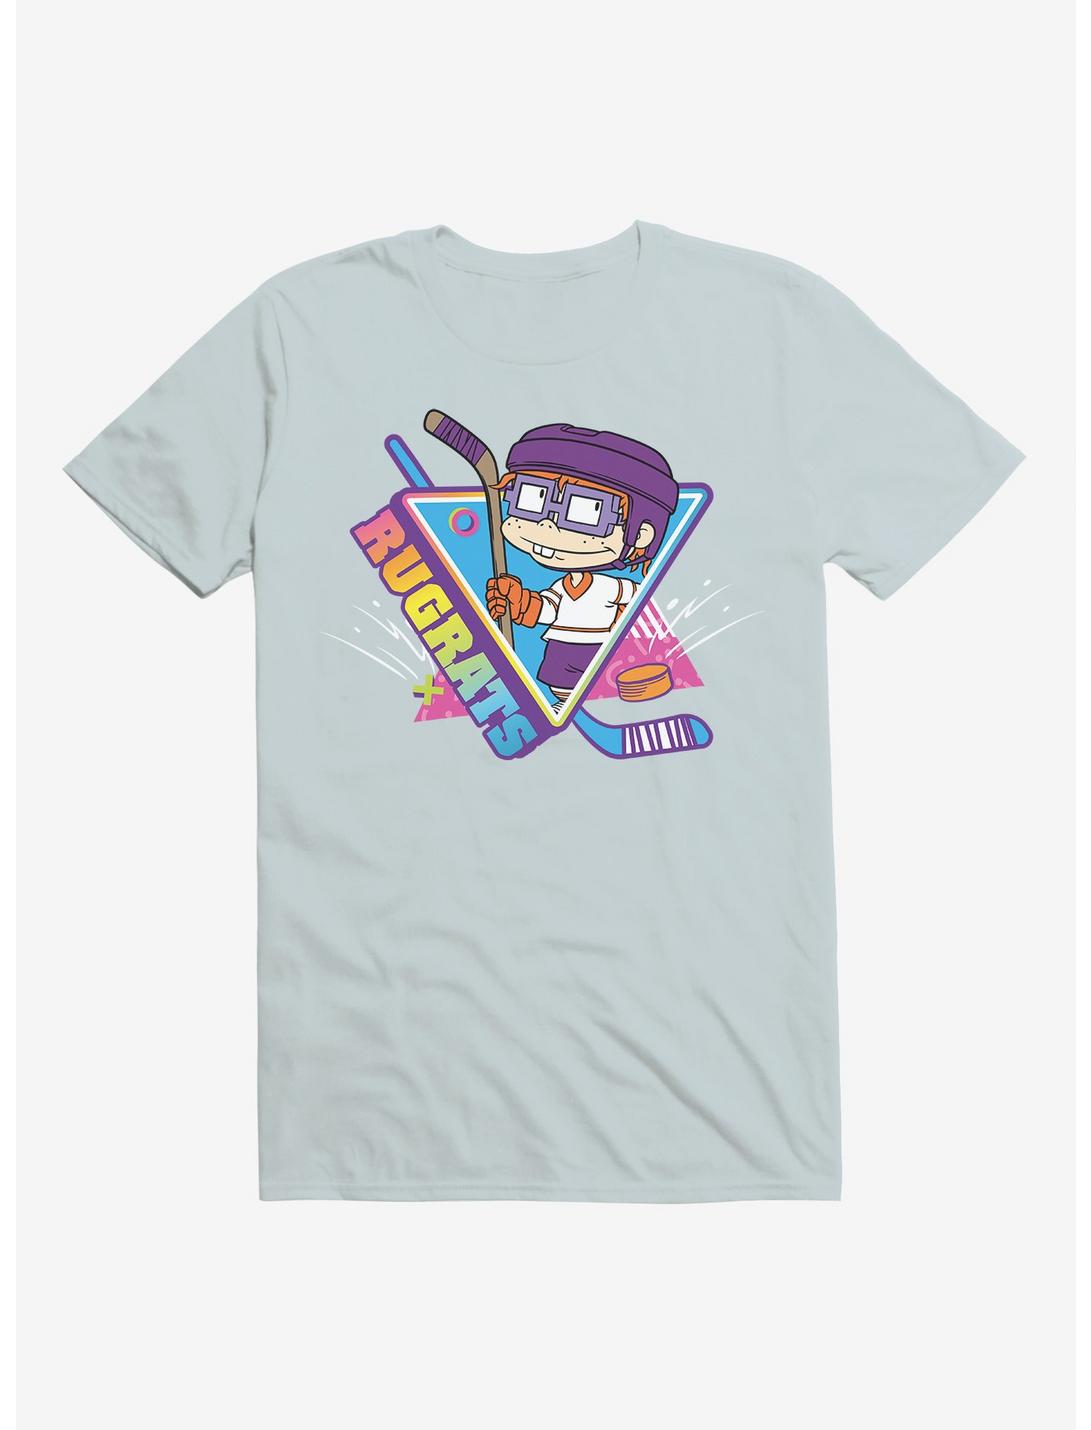 Rugrats Chuckie Goal T-Shirt, , hi-res